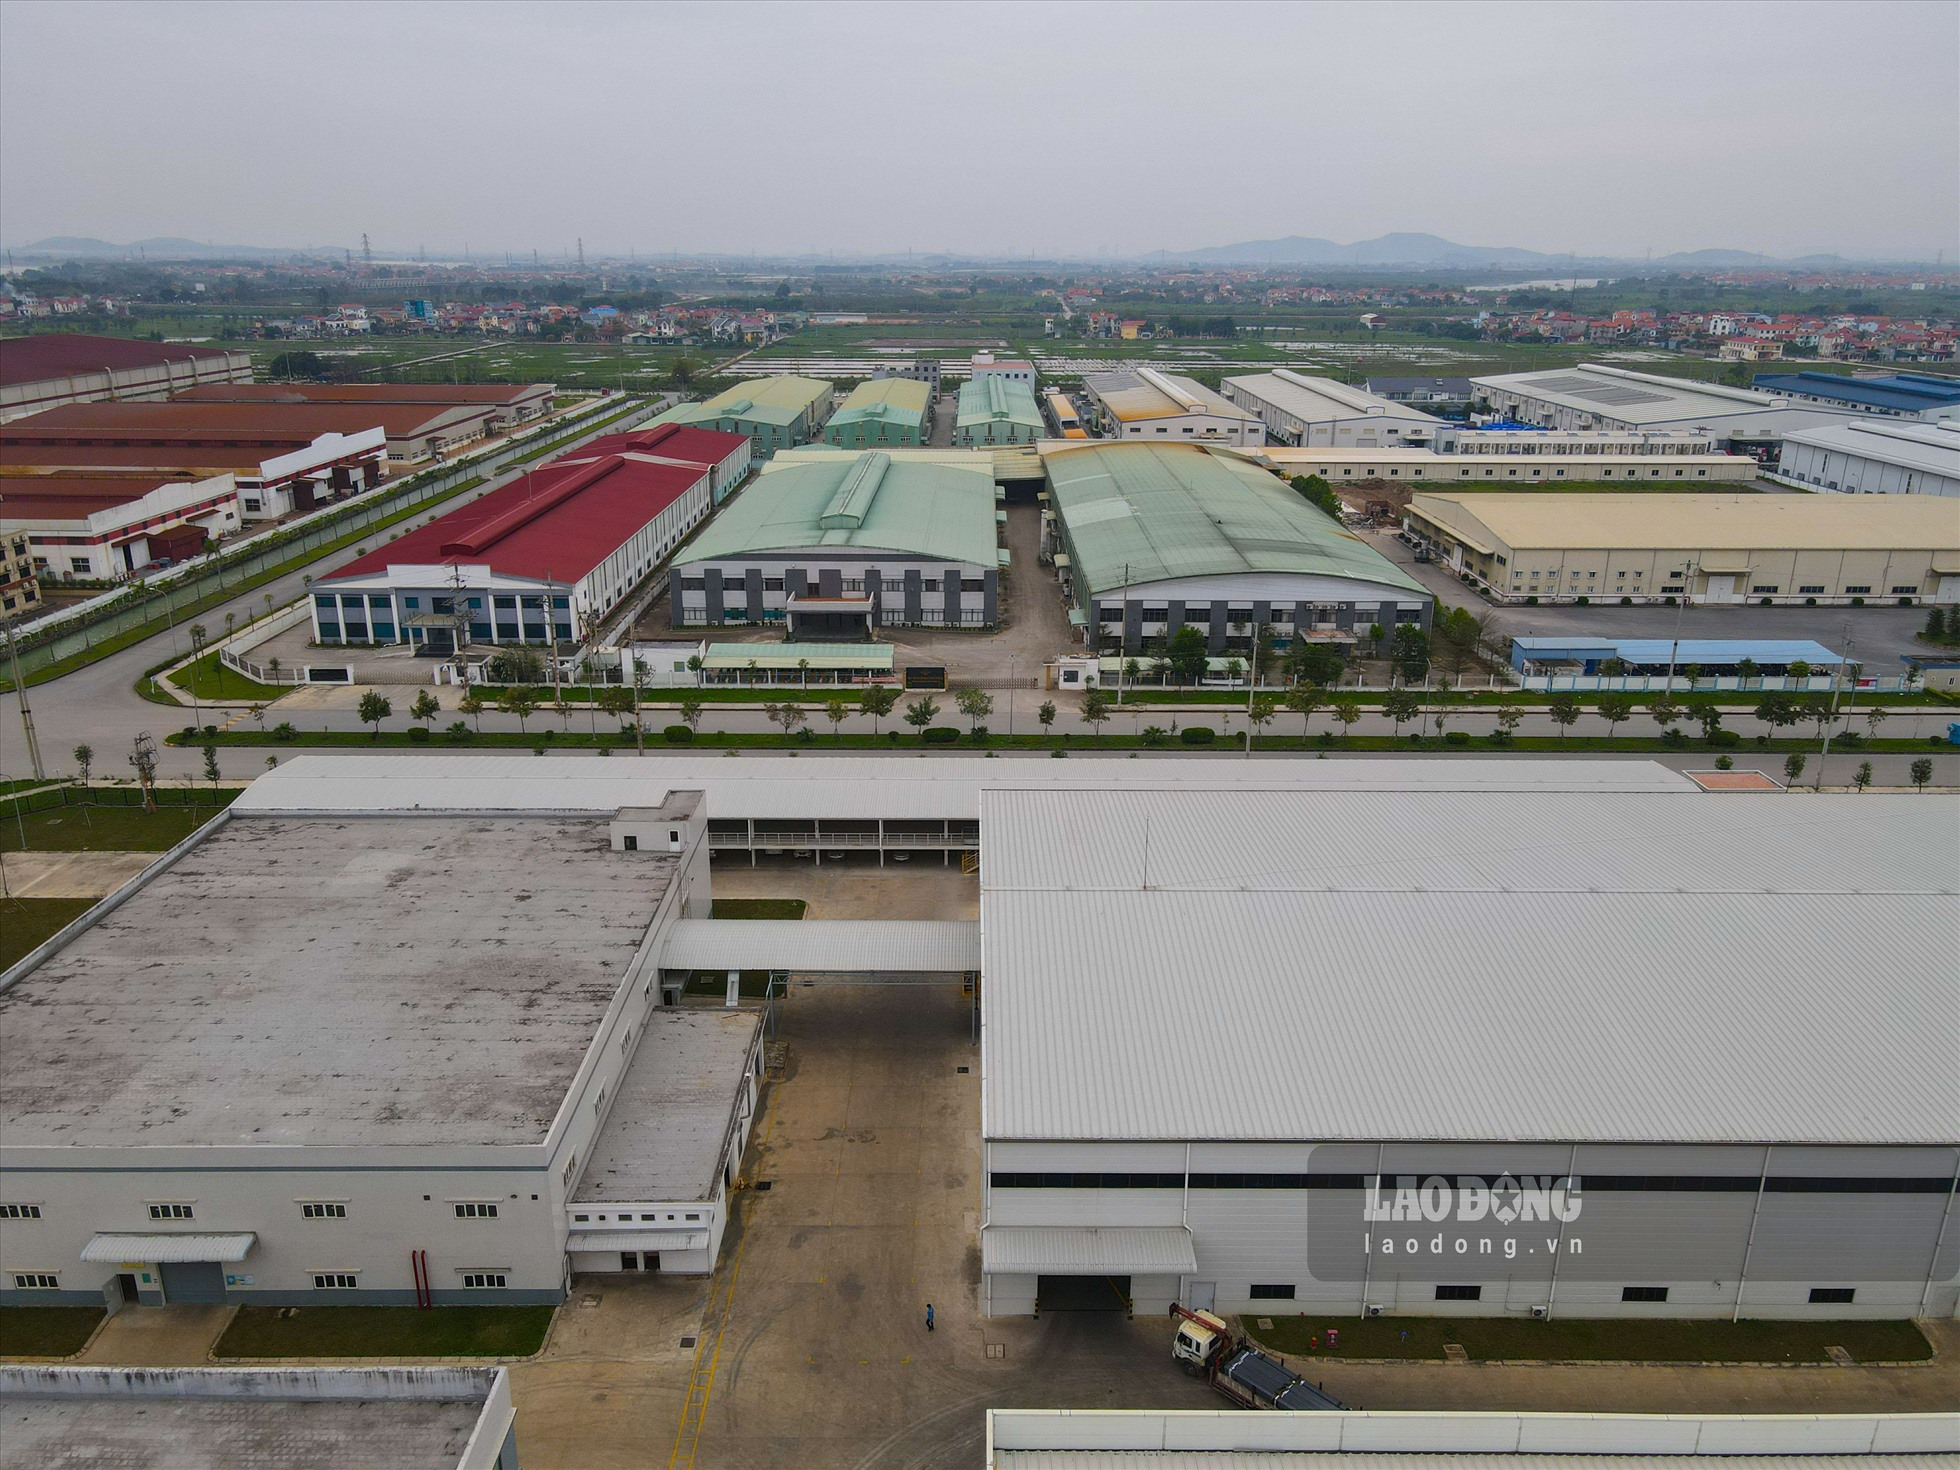 Tốc độ tăng trưởng kinh tế của huyện Thuận Thành liên tục đạt mức cao, giai đoạn 2018 - 2020 đạt bình quân là 9,35%/năm. Trên địa bàn huyện Thuận Thành hiện có 7.327 cơ sở sản xuất công nghiệp, 3 khu công nghiệp với tổng diện tích đạt 990 ha. Ngành công nghiệp - xây dựng chiếm hơn 50% trong cơ cấu kinh tế của địa phương.